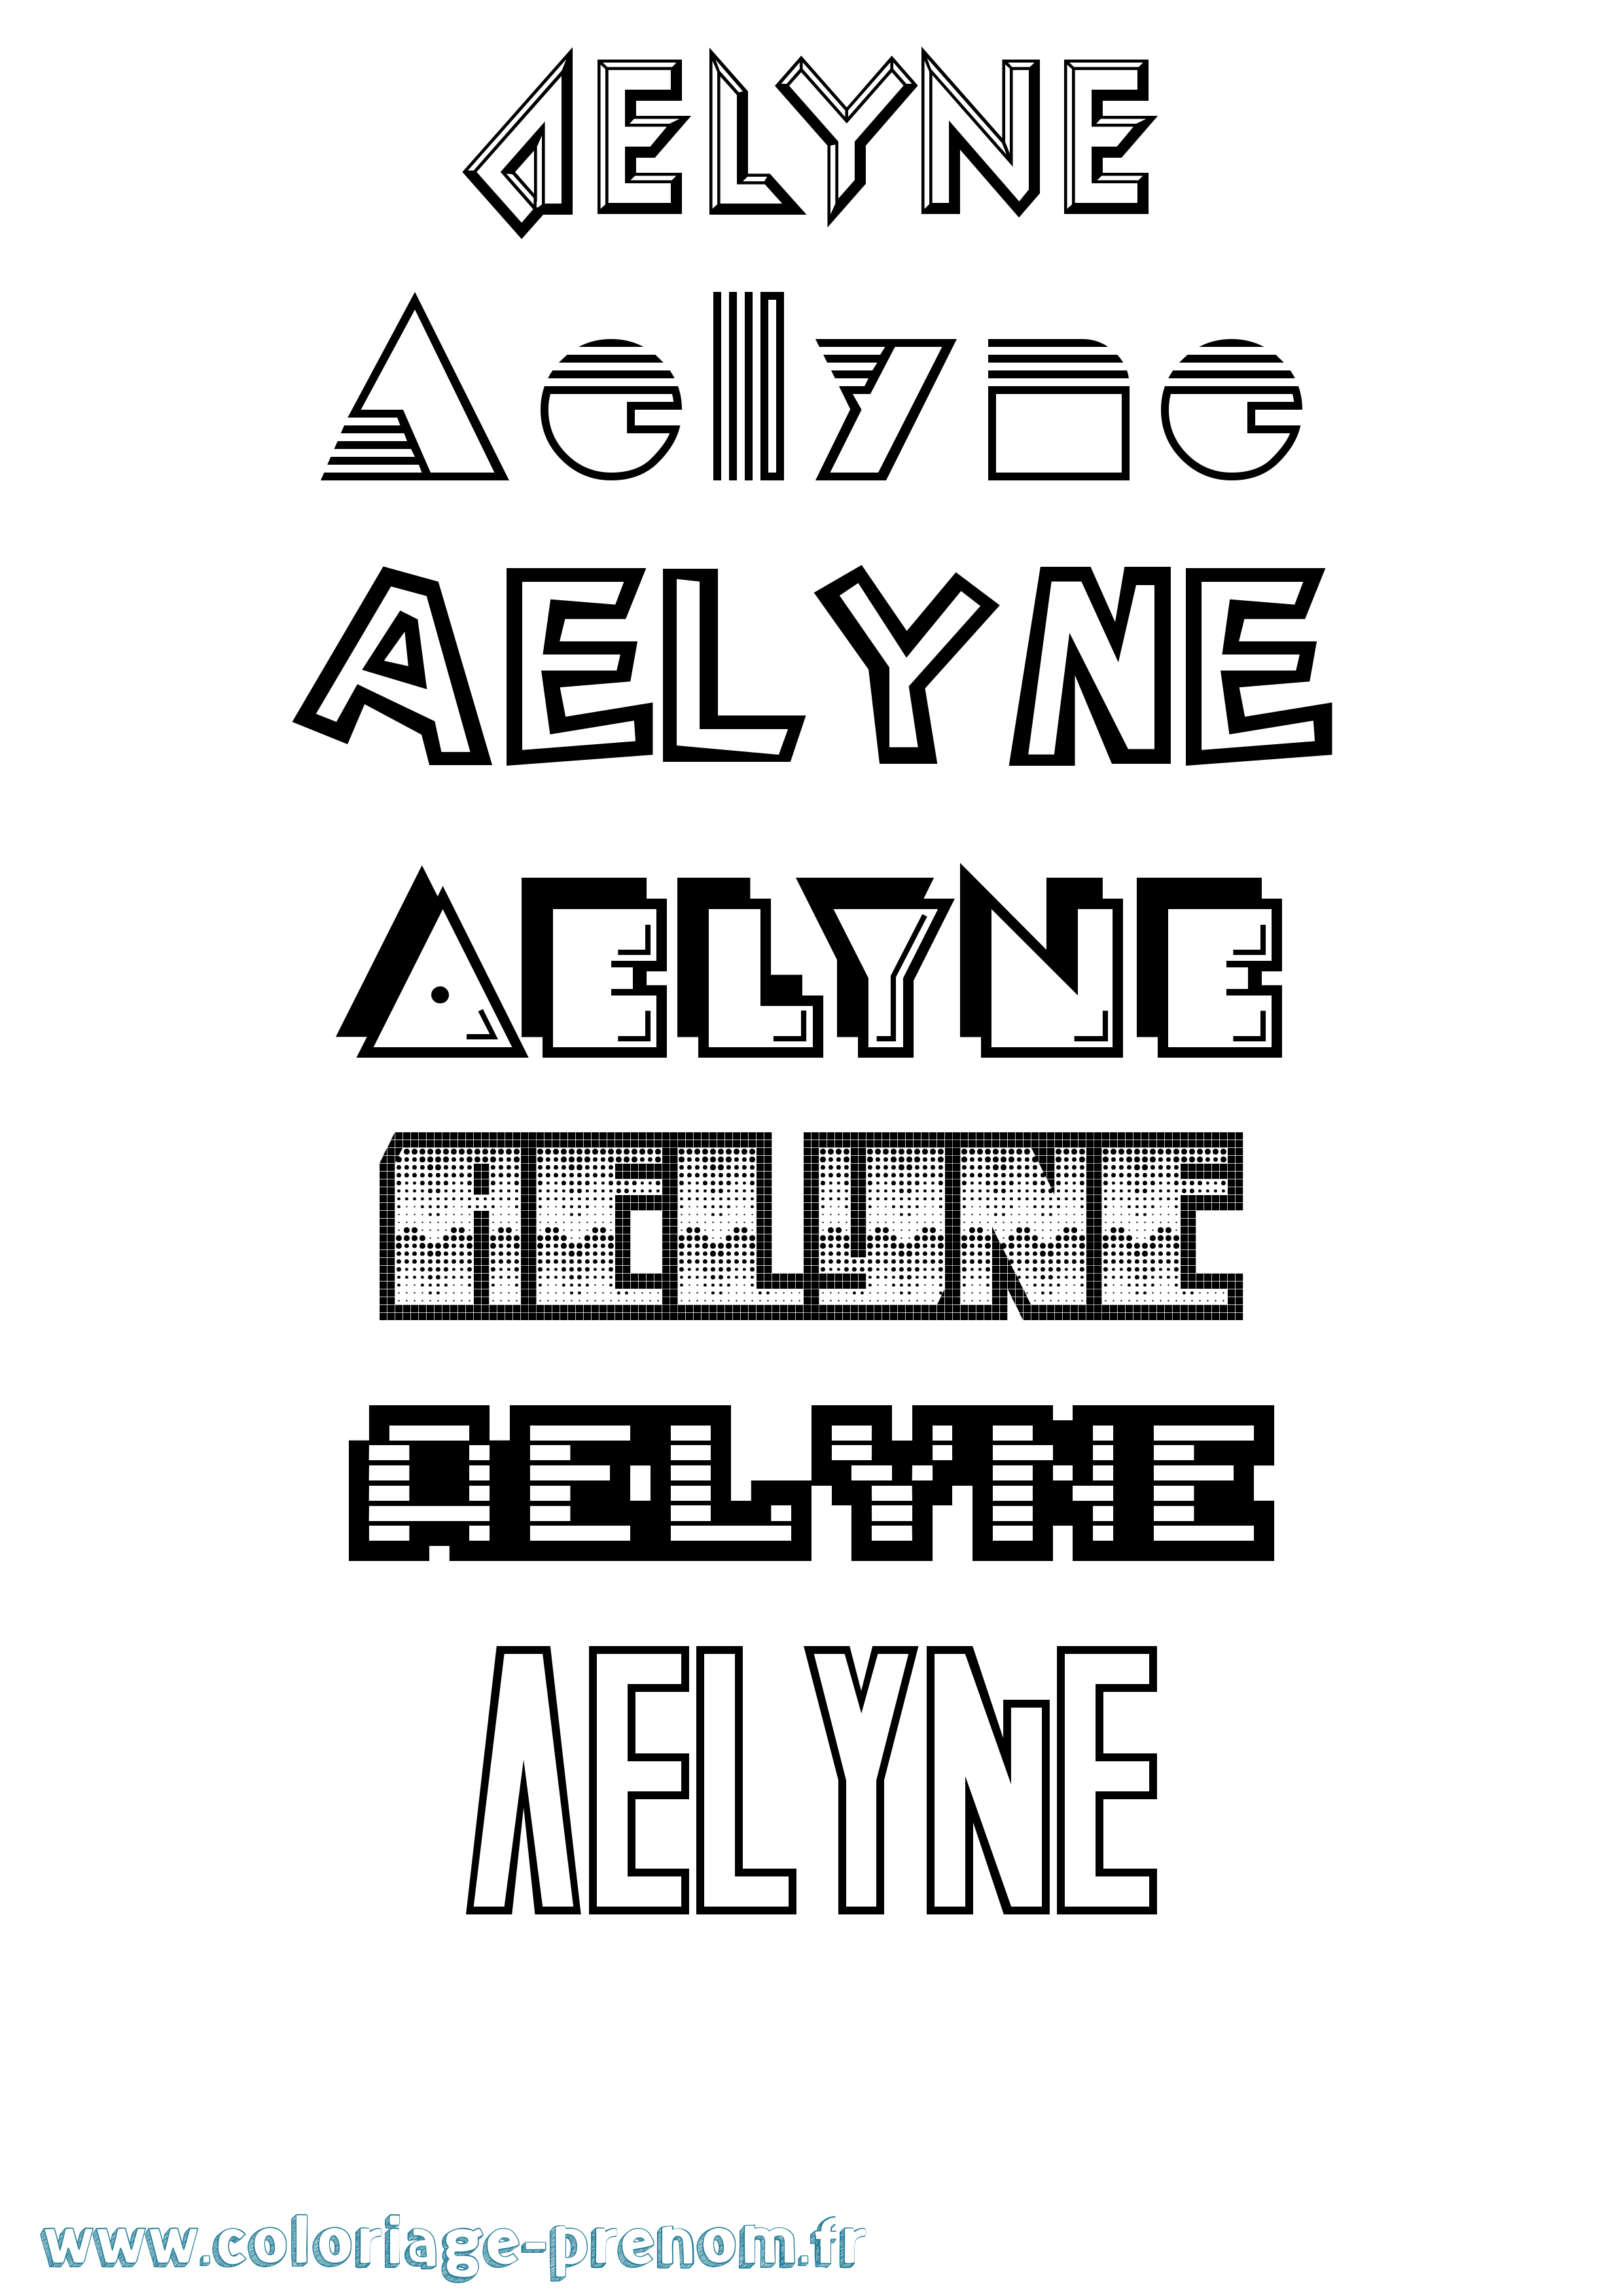 Coloriage prénom Aelyne Jeux Vidéos